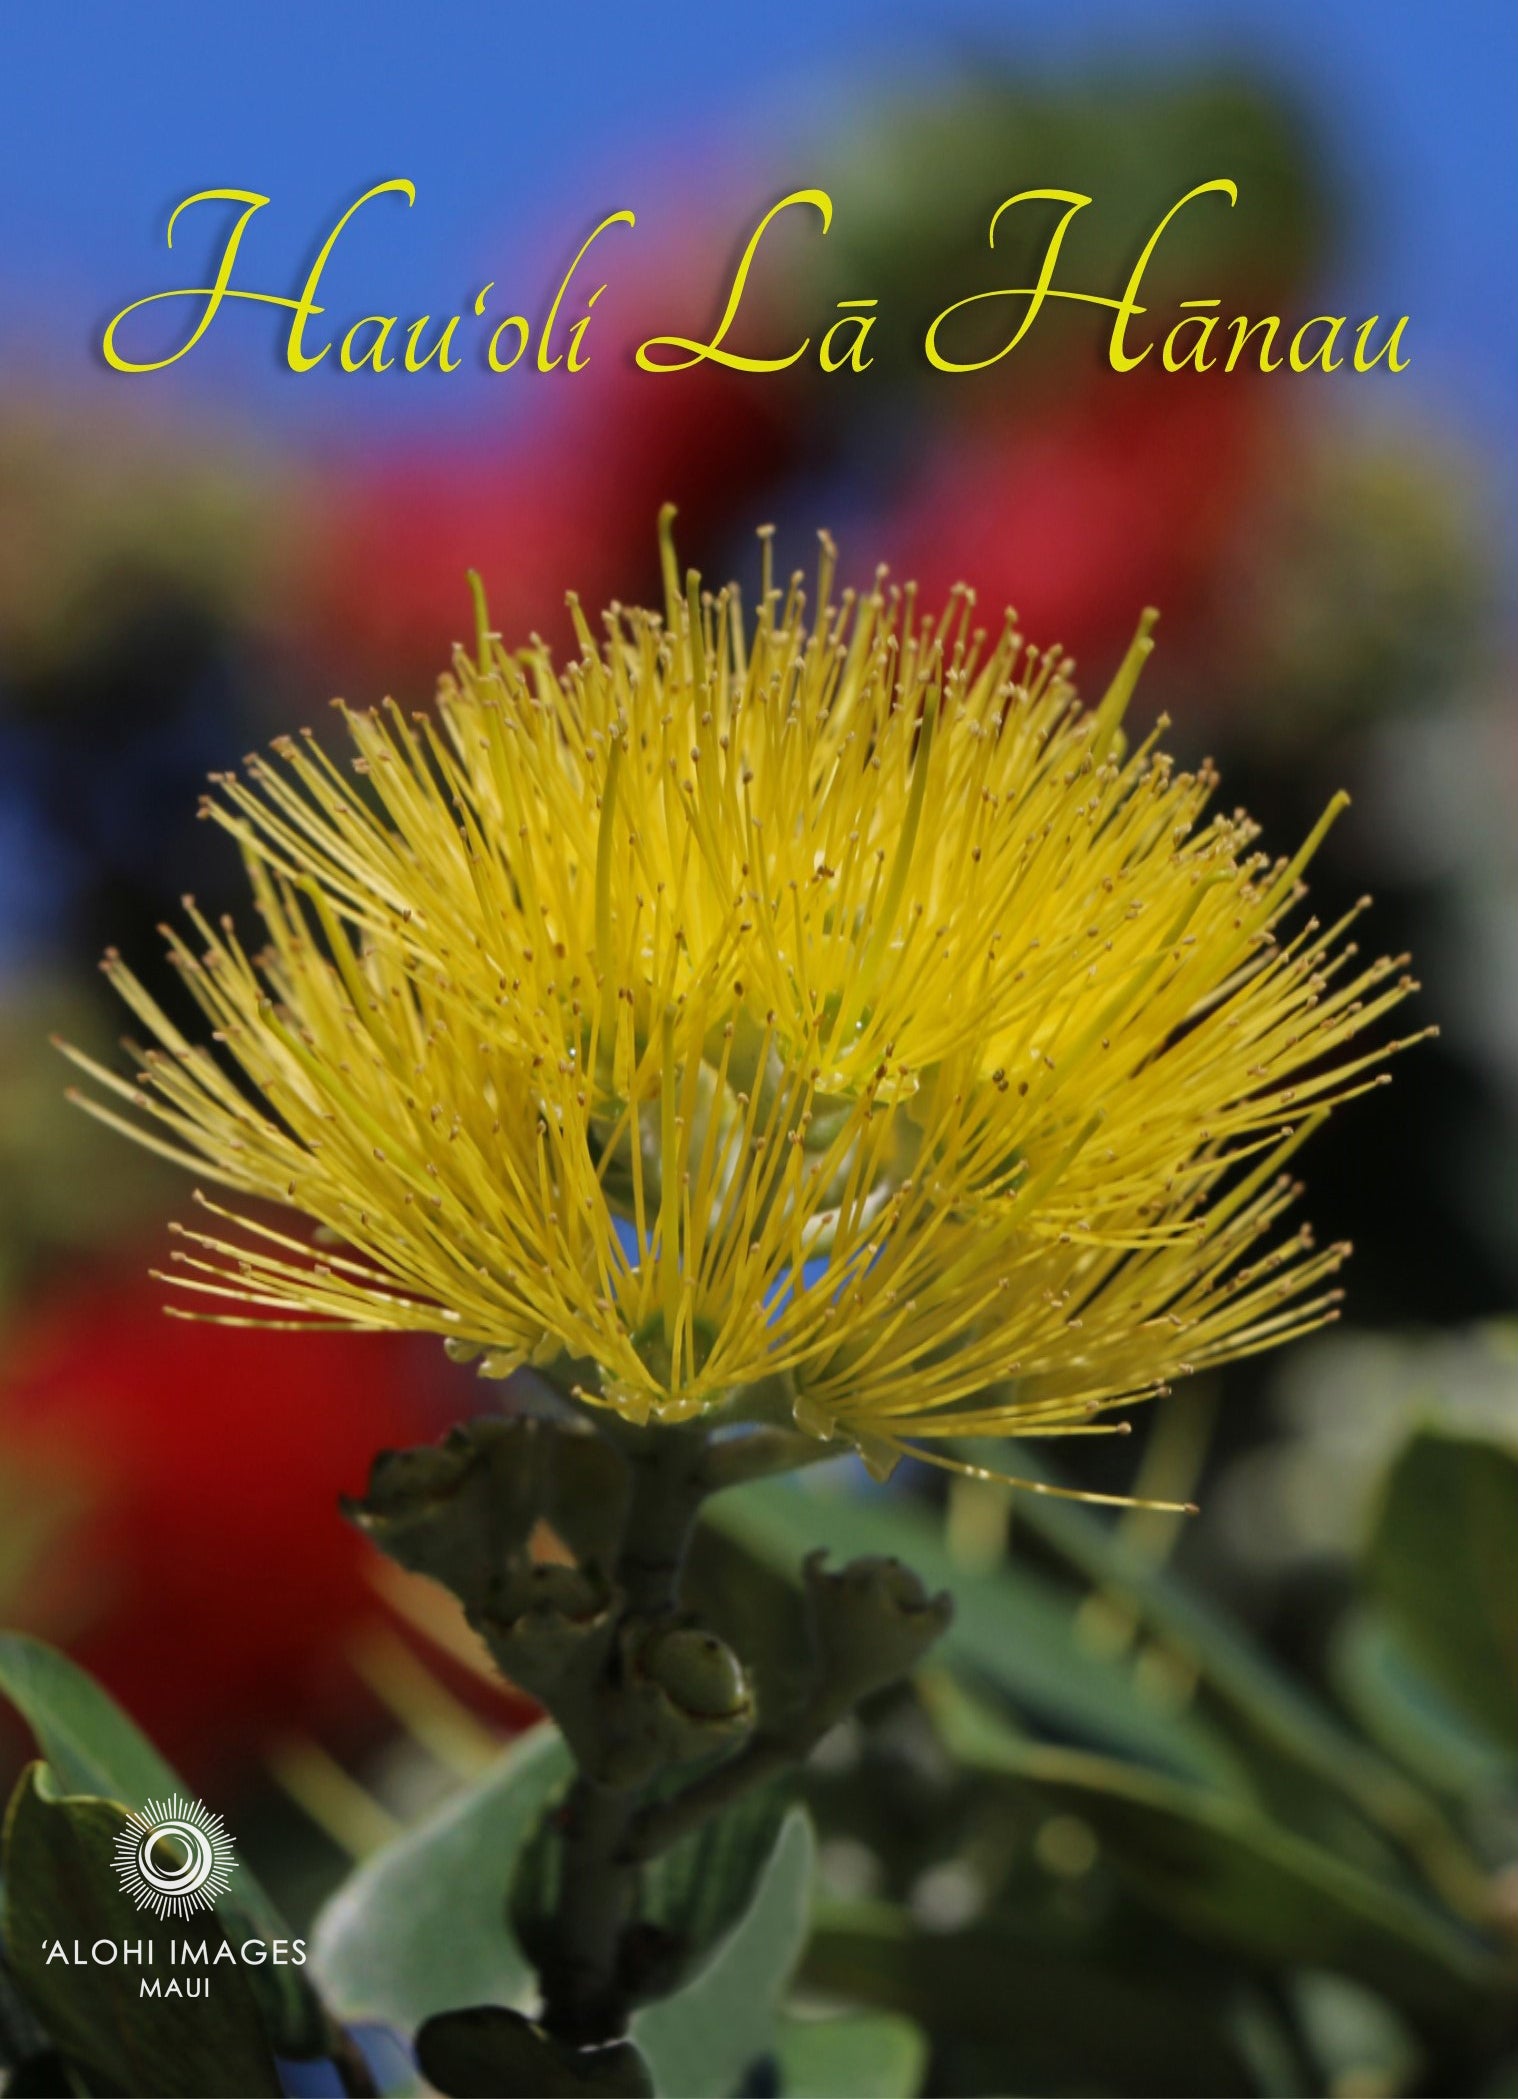 Pop-Up Mākeke - Alohi Images Maui - Hau‘oli Lā Hānau (Happy Birthday) Greeting Card - ‘Ōhi‘a mamo